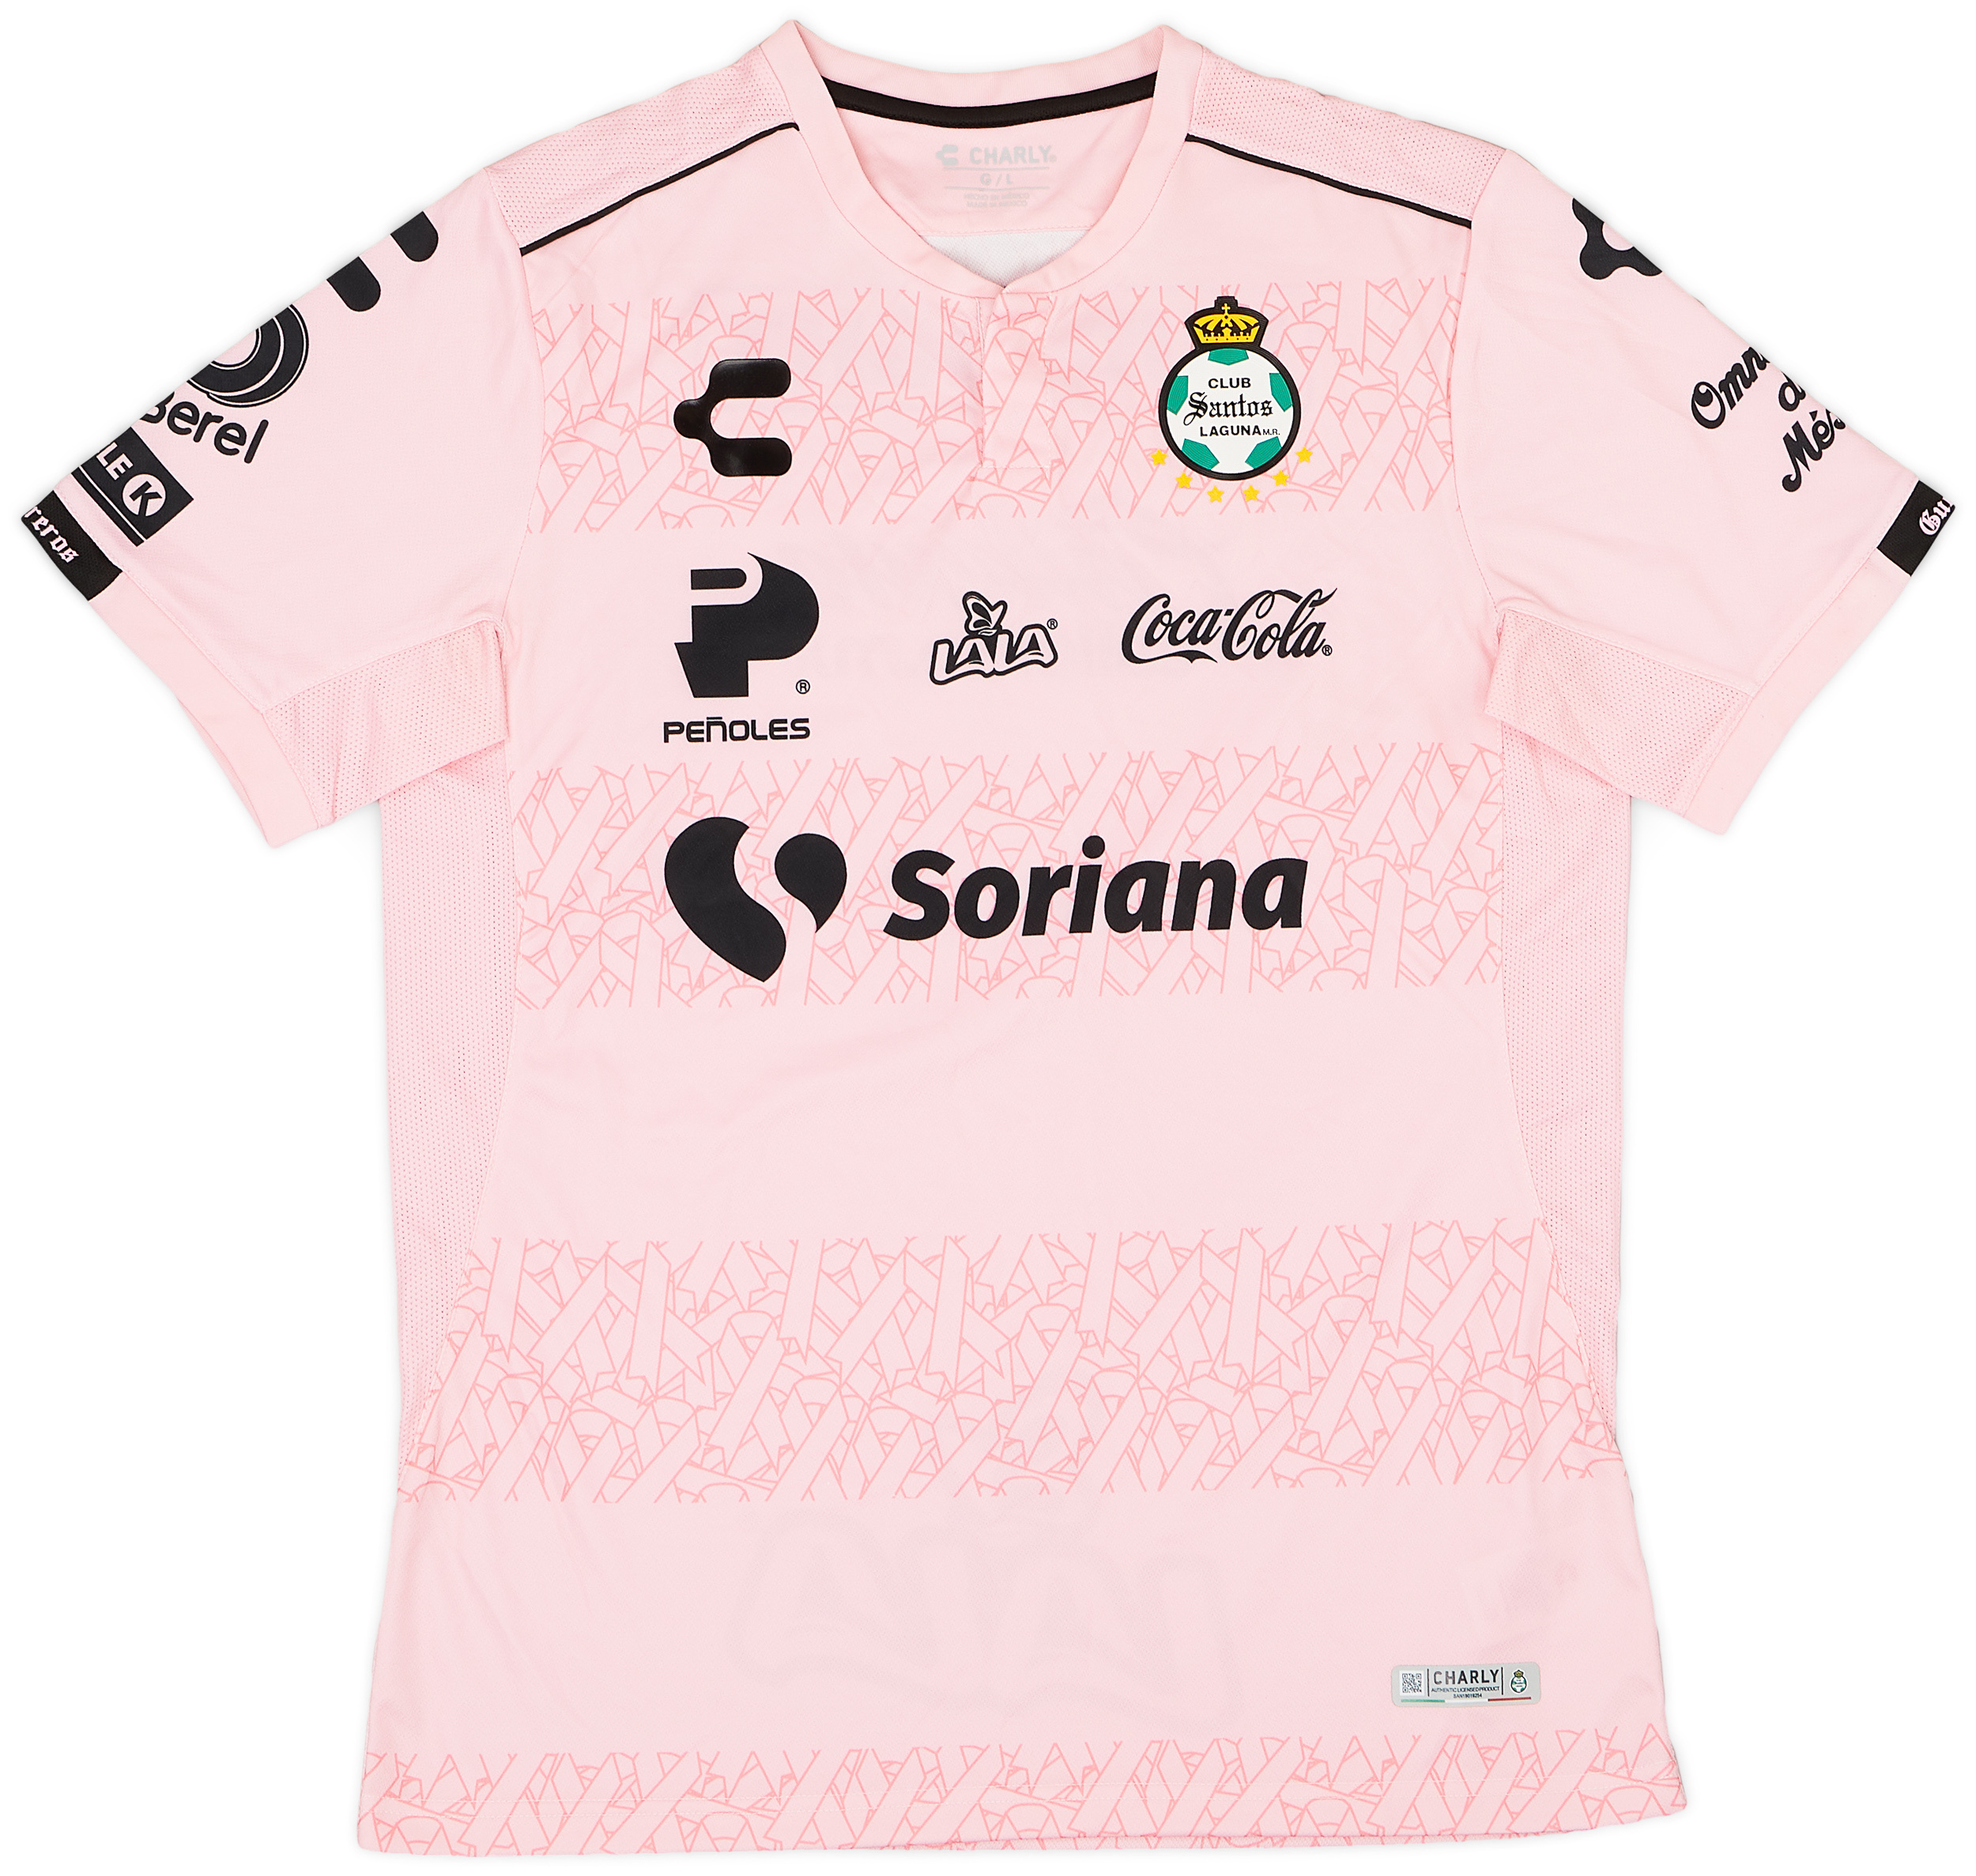 2019-20 Santos Laguna Special Pink October Shirt - 10/10 - ()